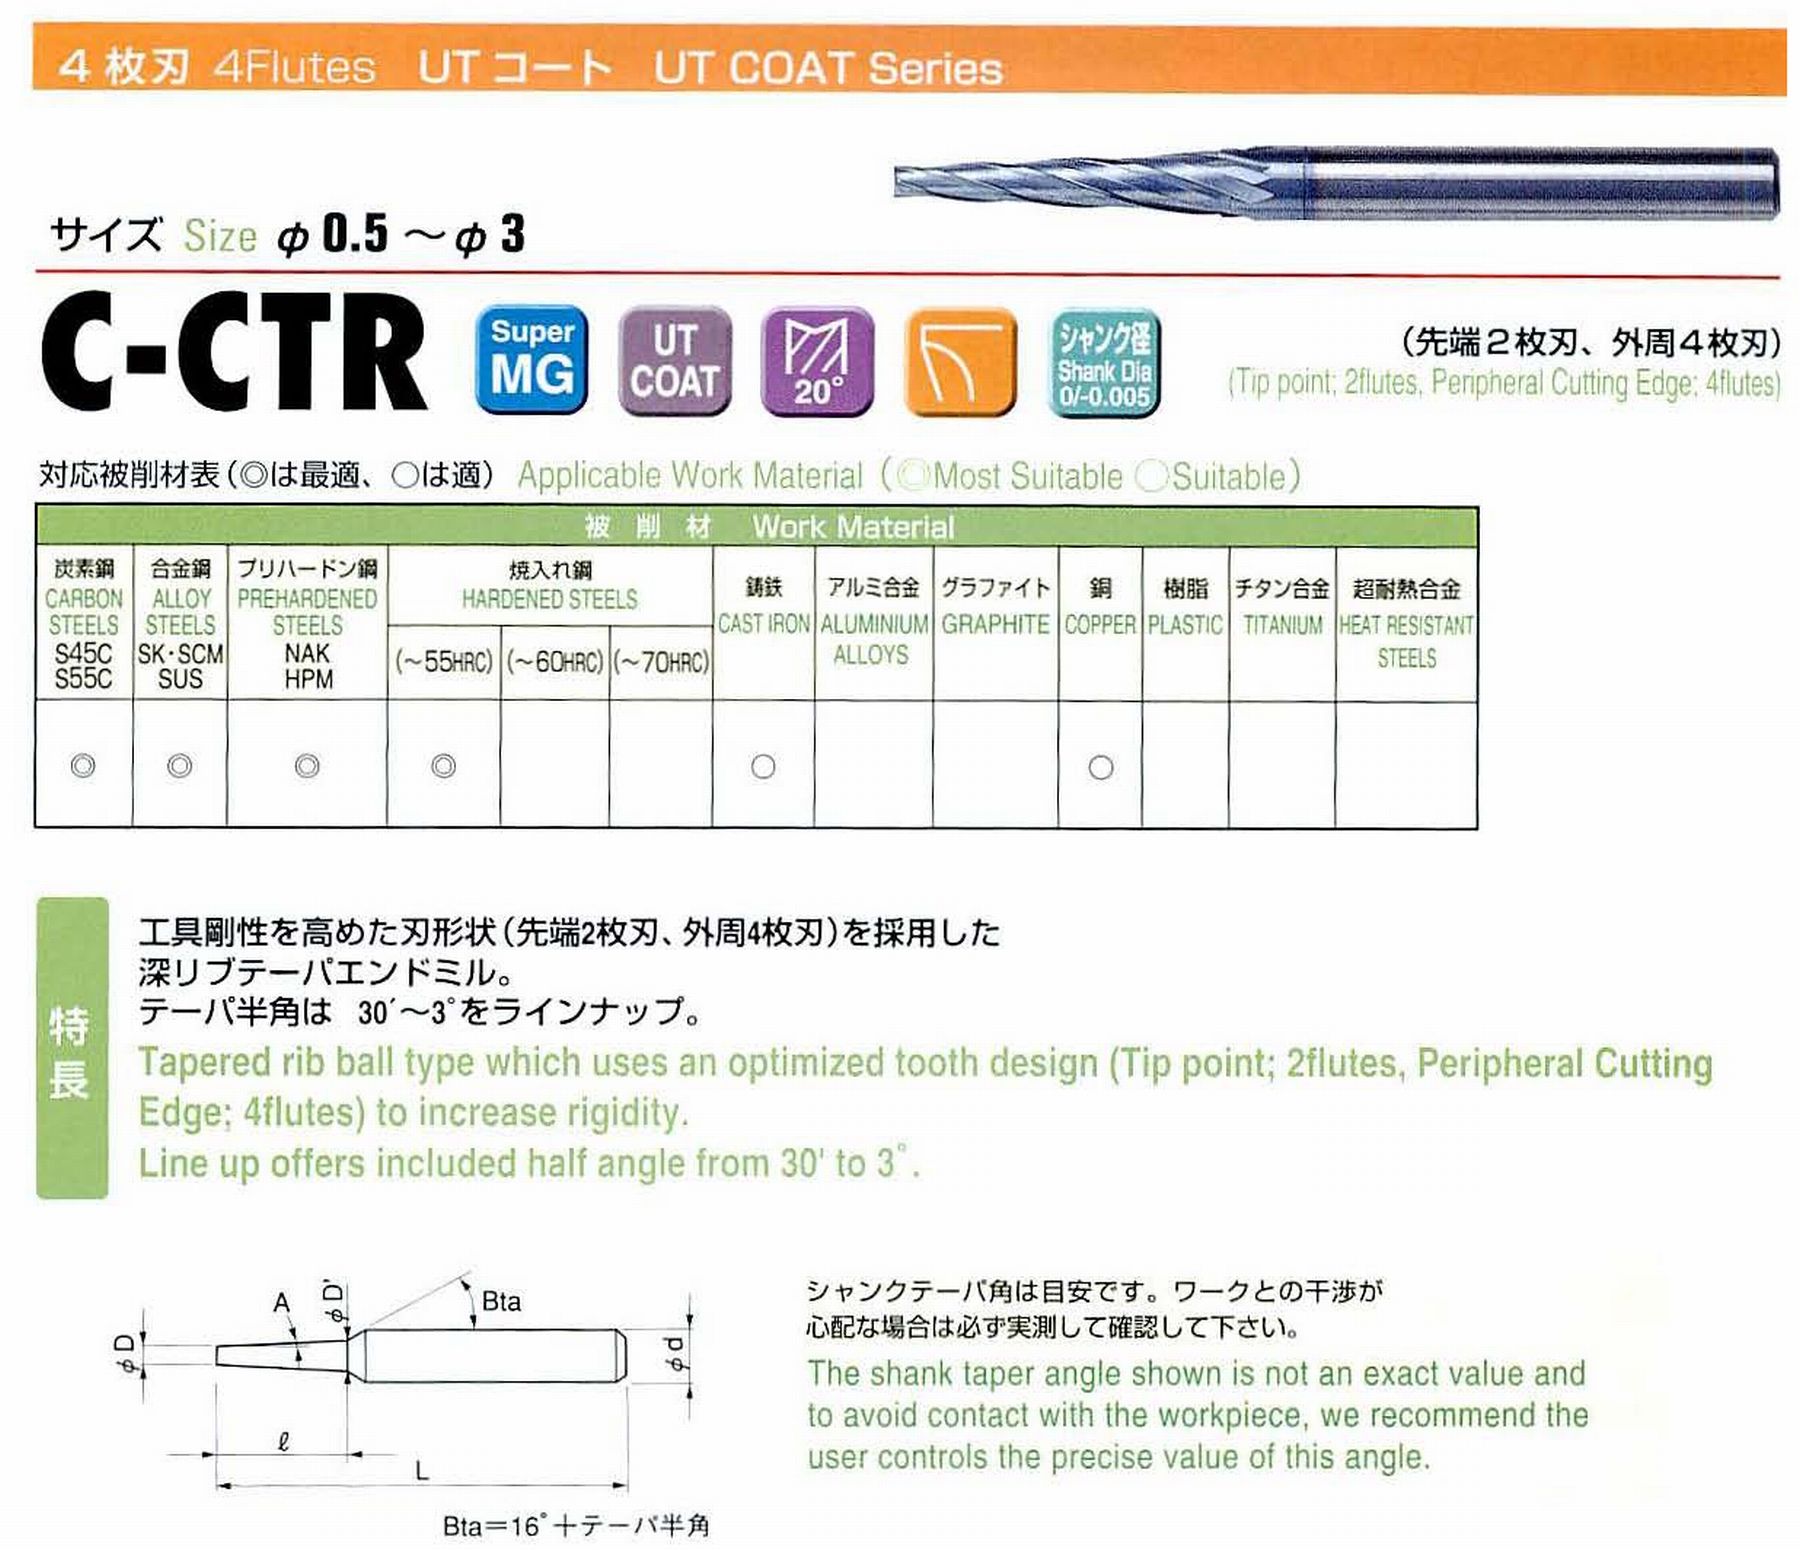 ユニオンツール 4枚刃 C-CTR4018-16-3 先端径1.8 テーパ半角1°30′ 刃長16 大端径2.64 全長55 シャンク径4